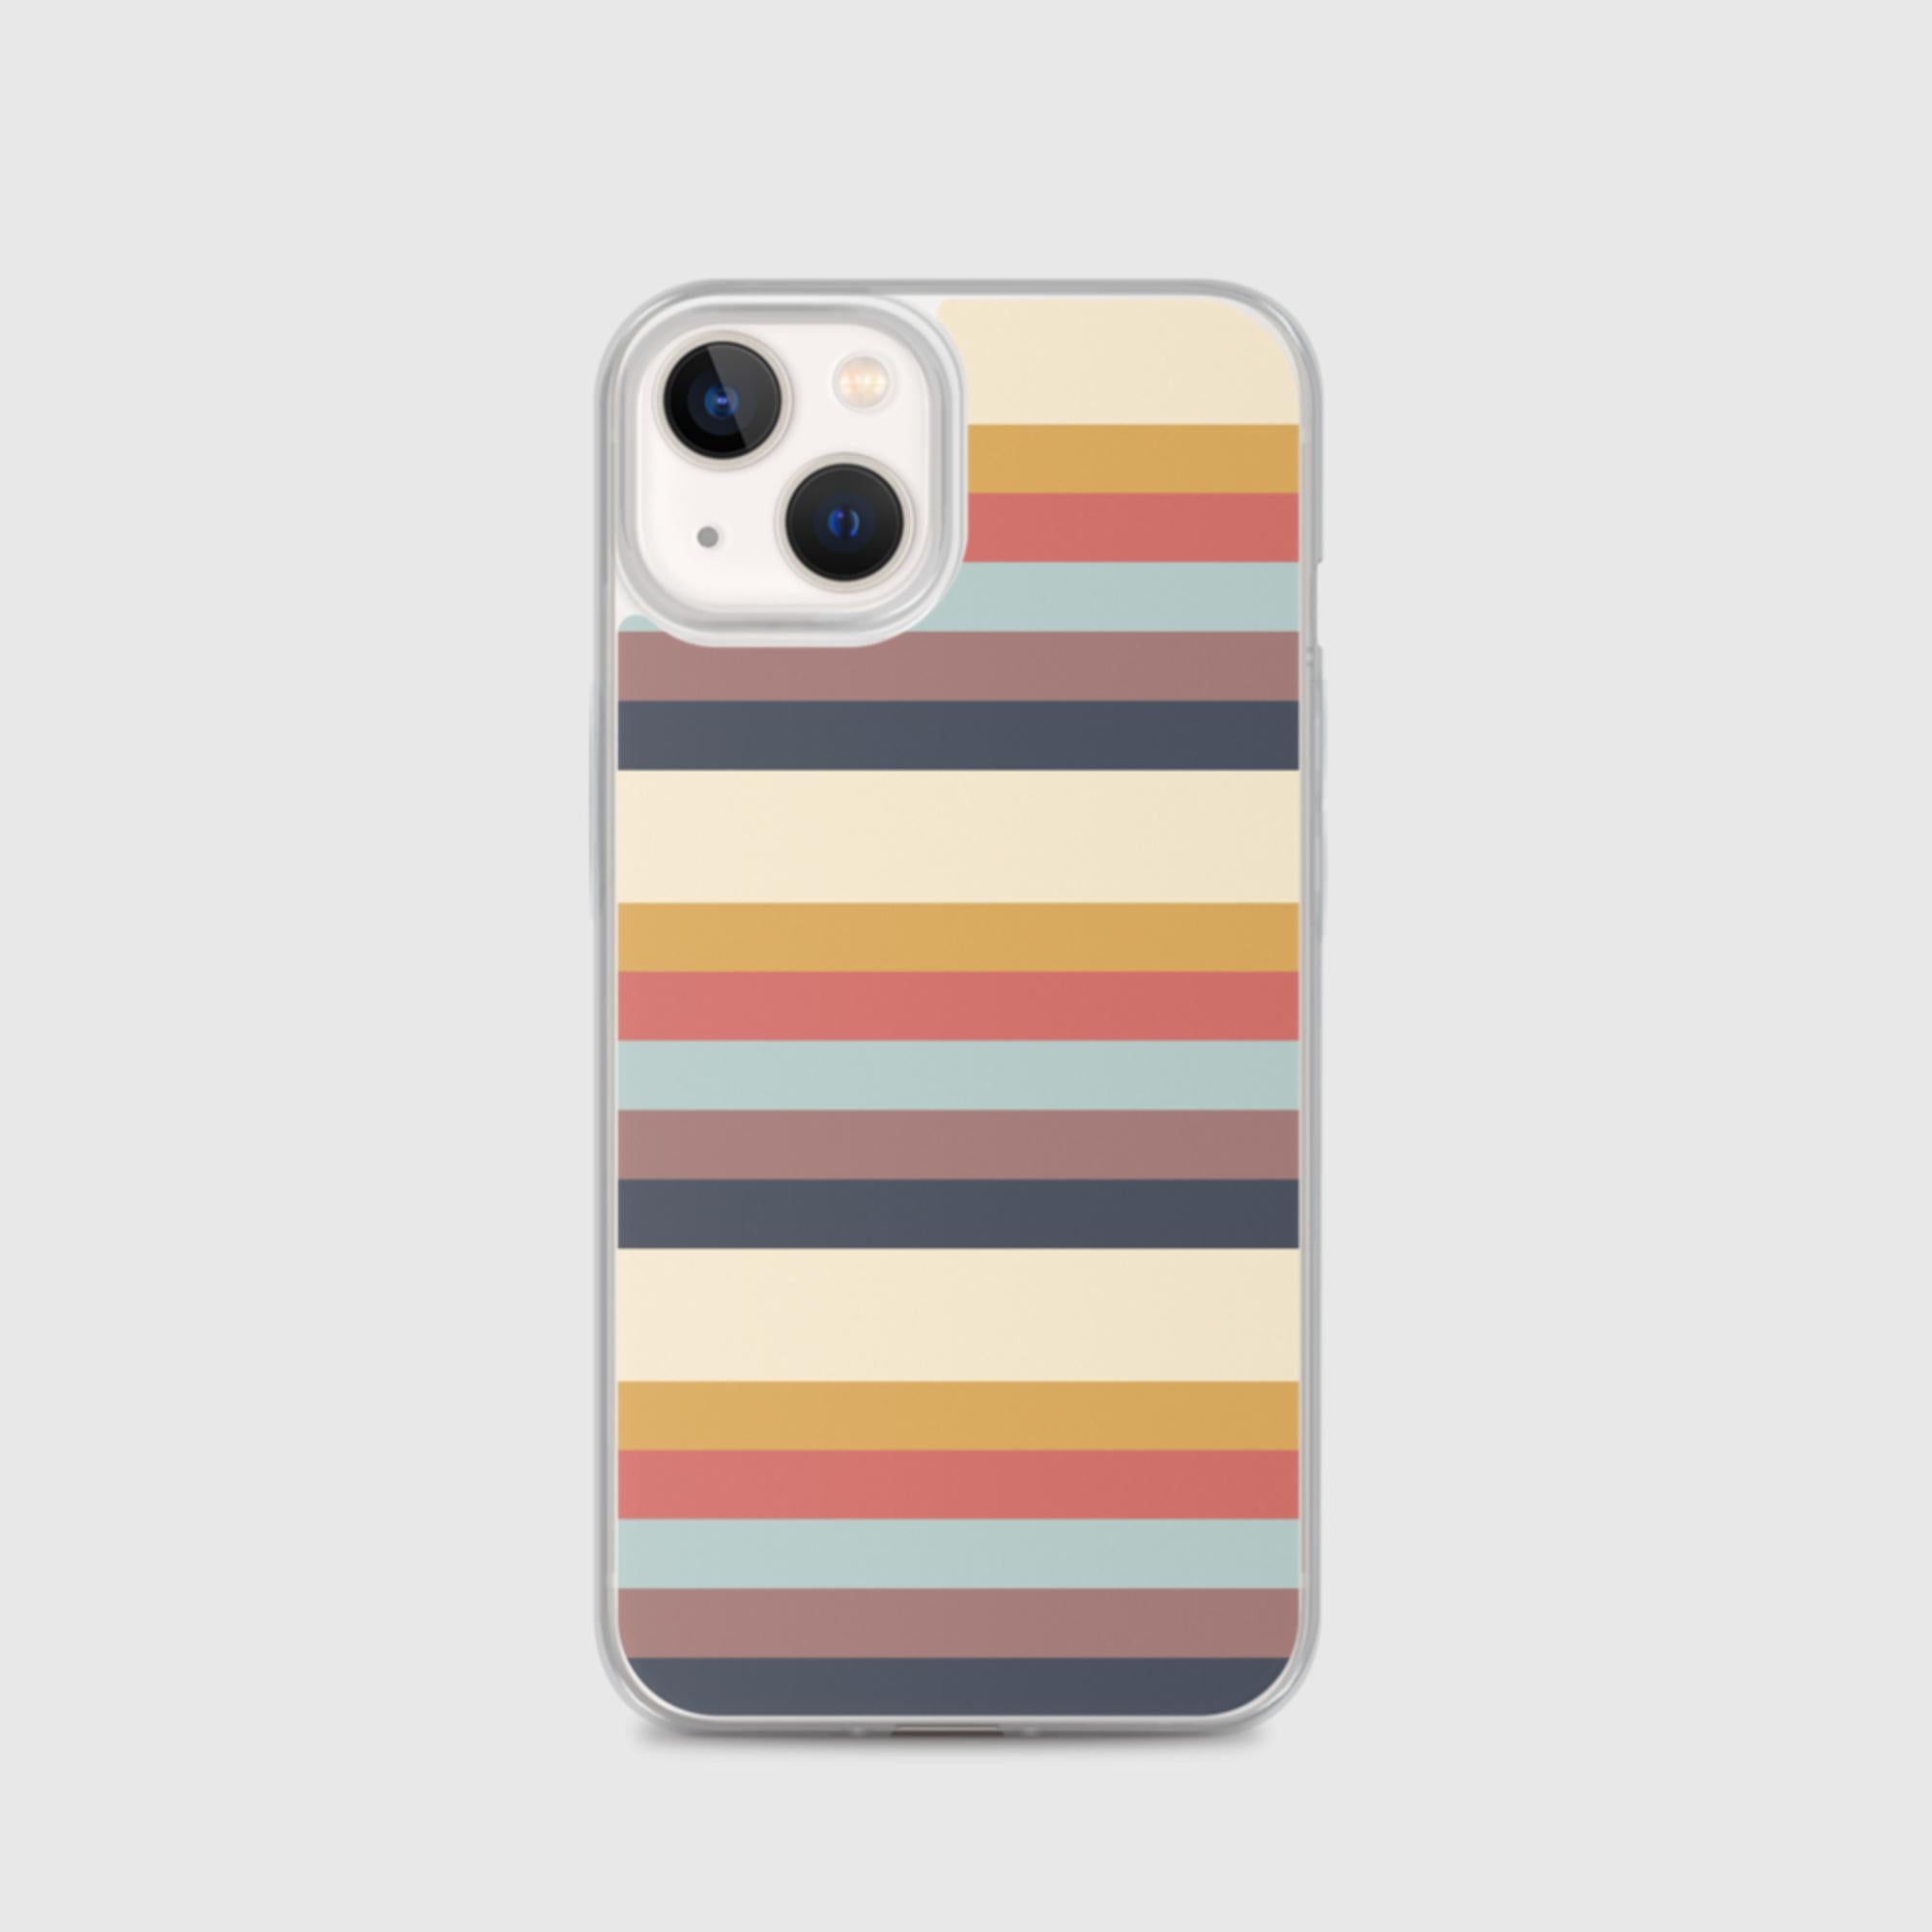 iPhone Case - Stripes - Sunset Harbor Clothing